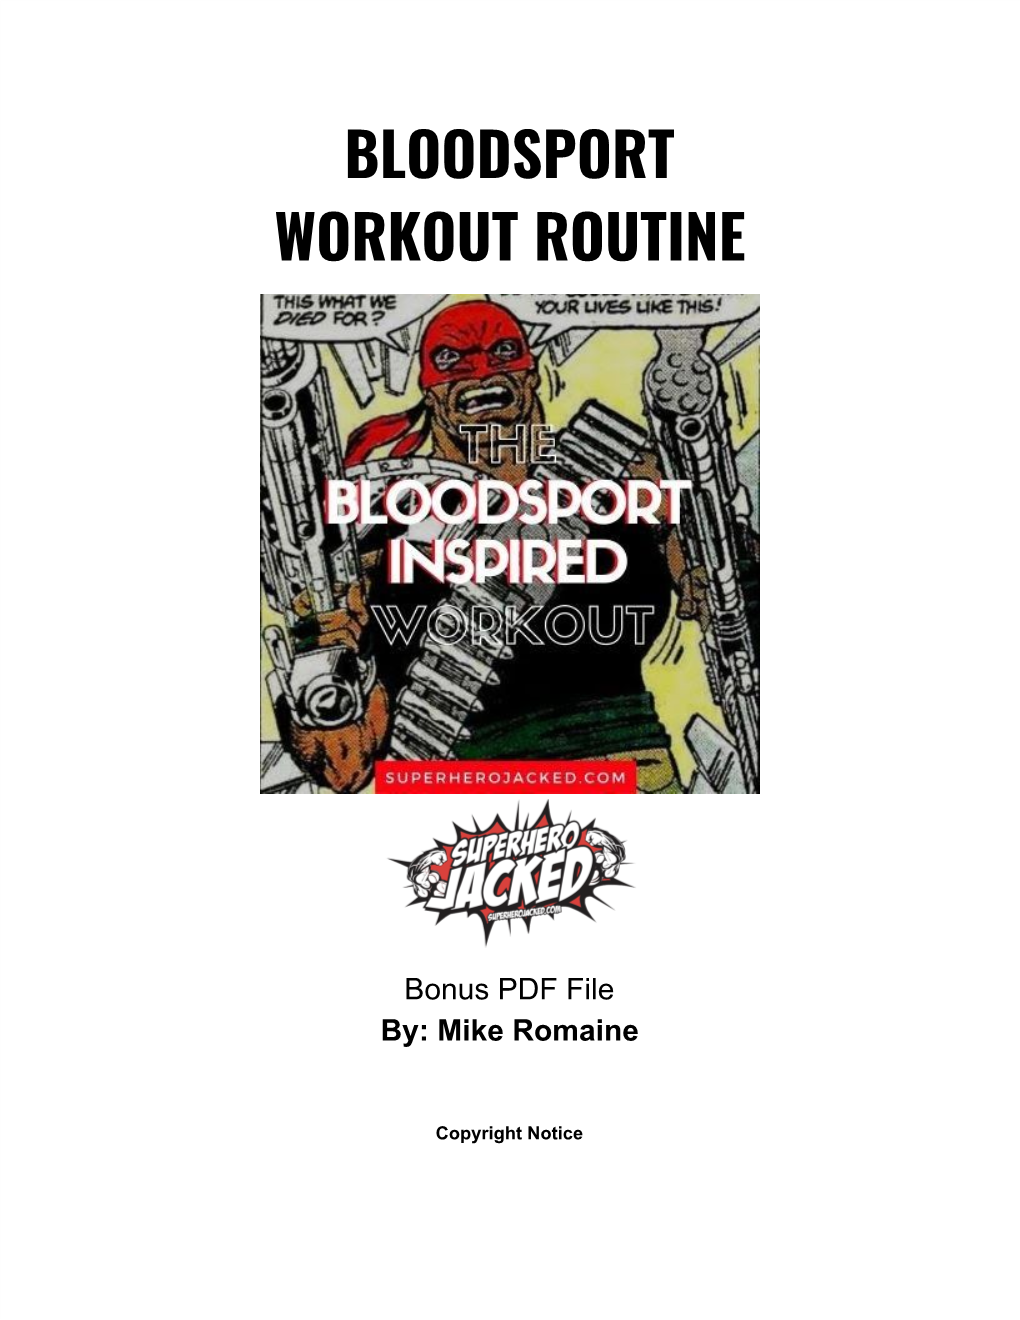 Bloodsport Workout Routine